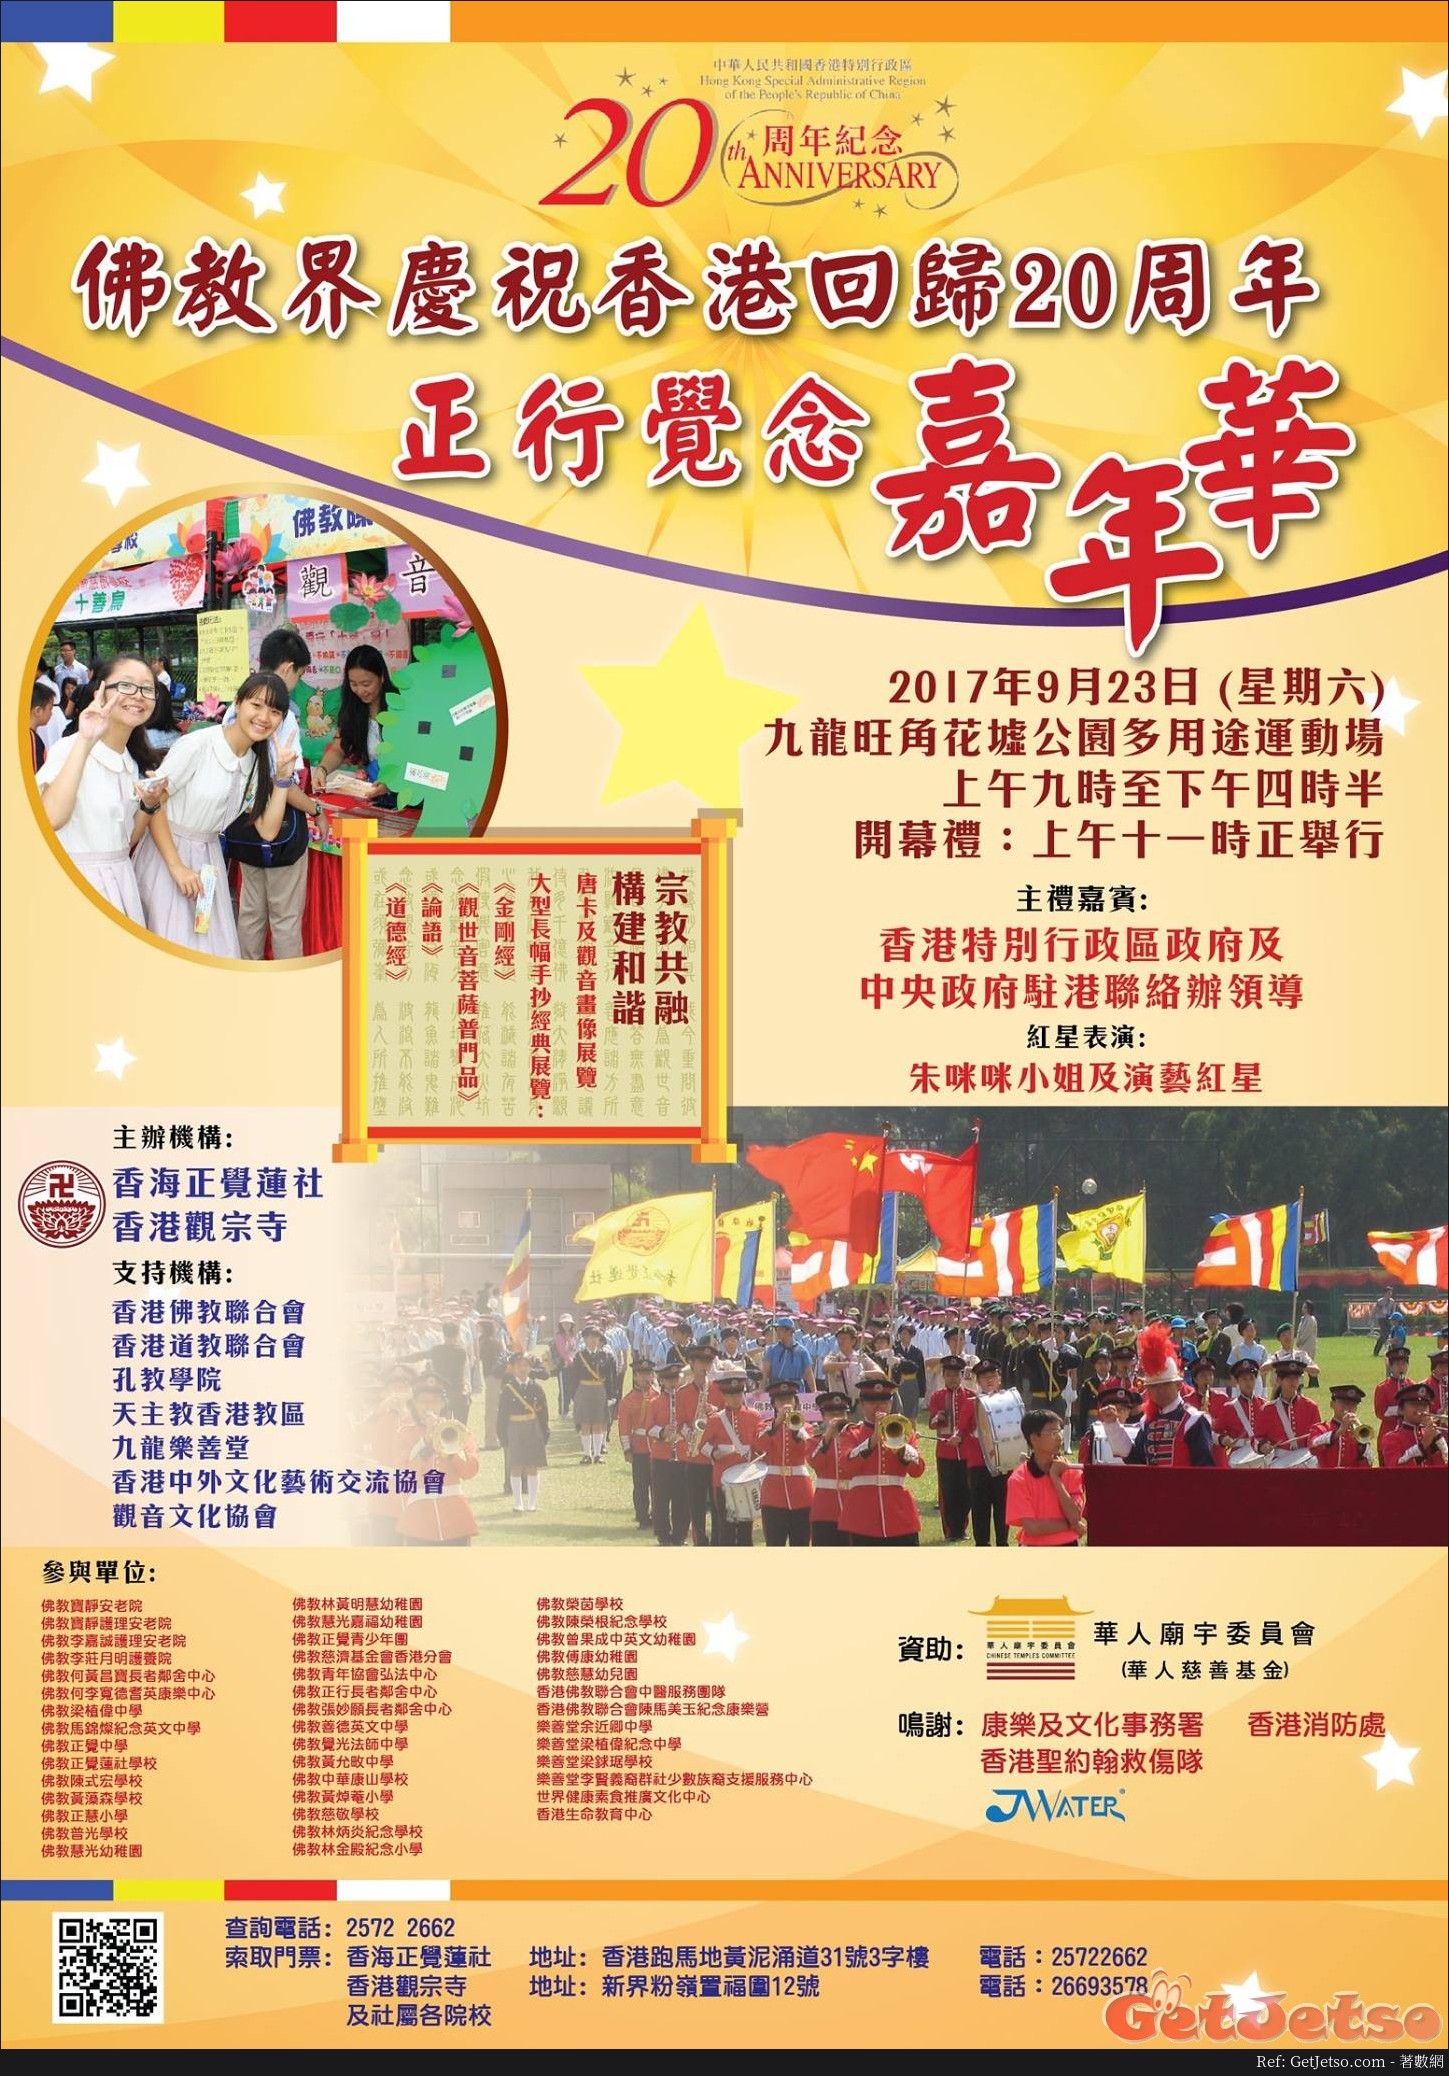 佛教界慶祝香港回歸20周年「正行覺念嘉年華」(17年9月23日)圖片1